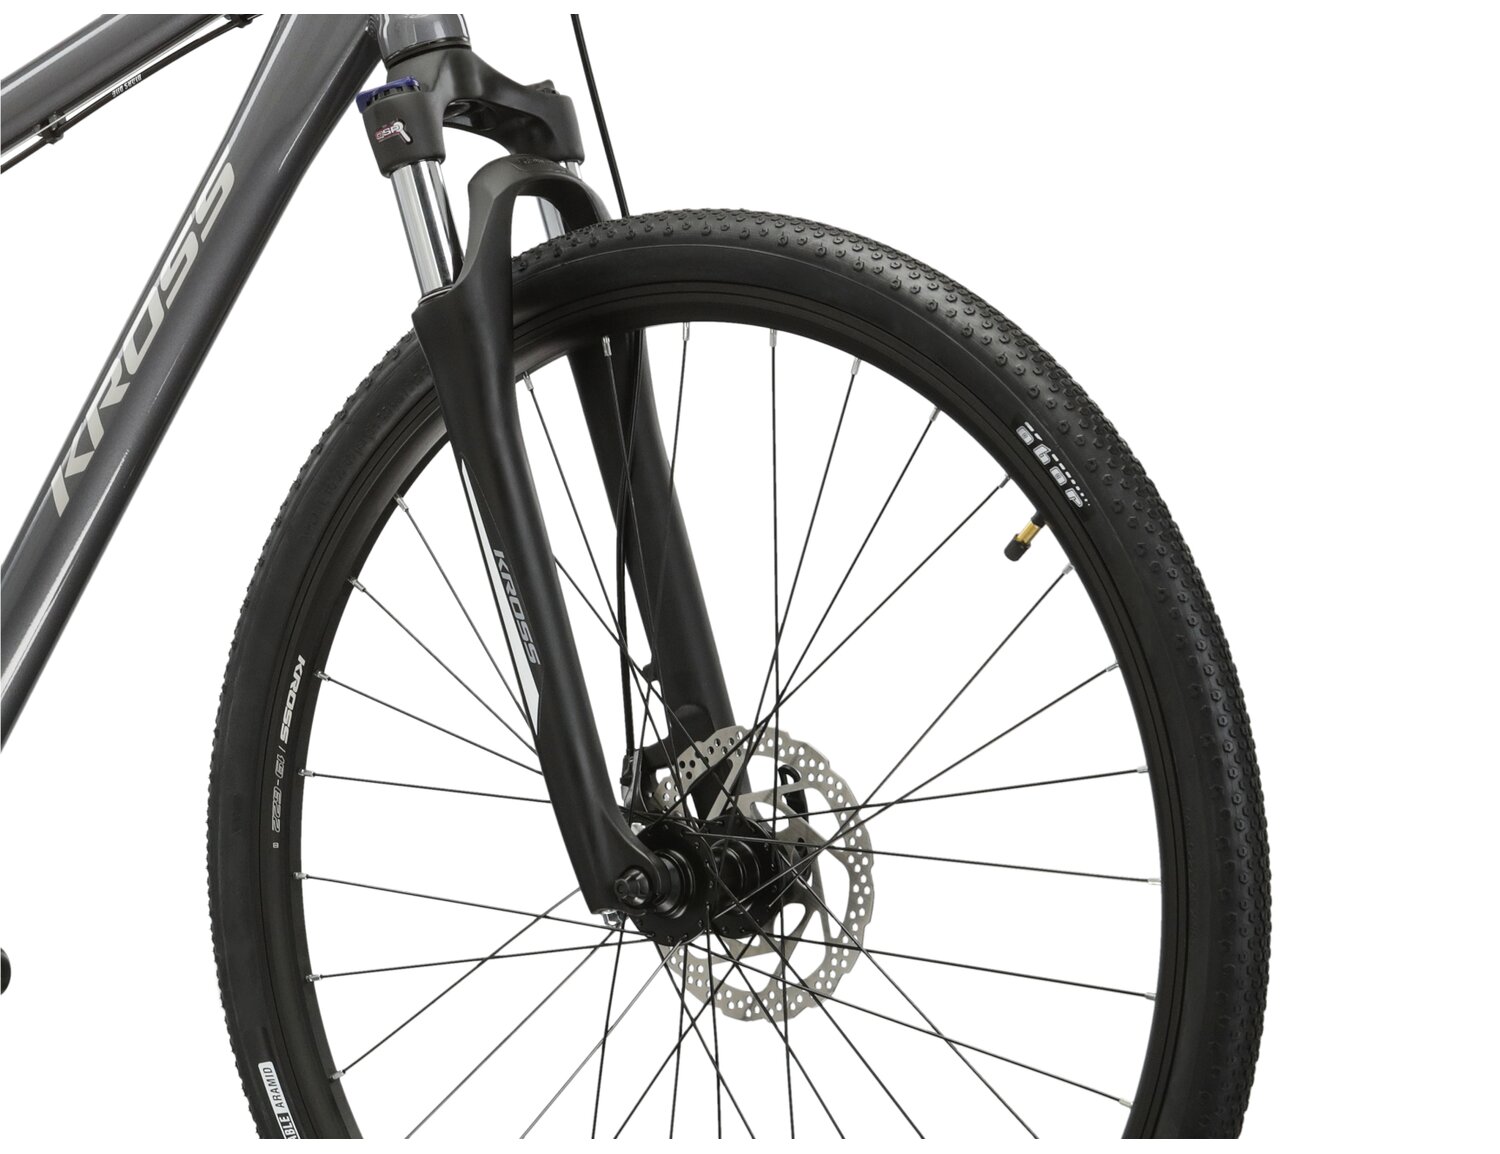 Aluminowa rama, amortyzowany widelec SR SUNTOUR NEX oraz opony Wanda w rowerze crossowym KROSS Tour 2.0 